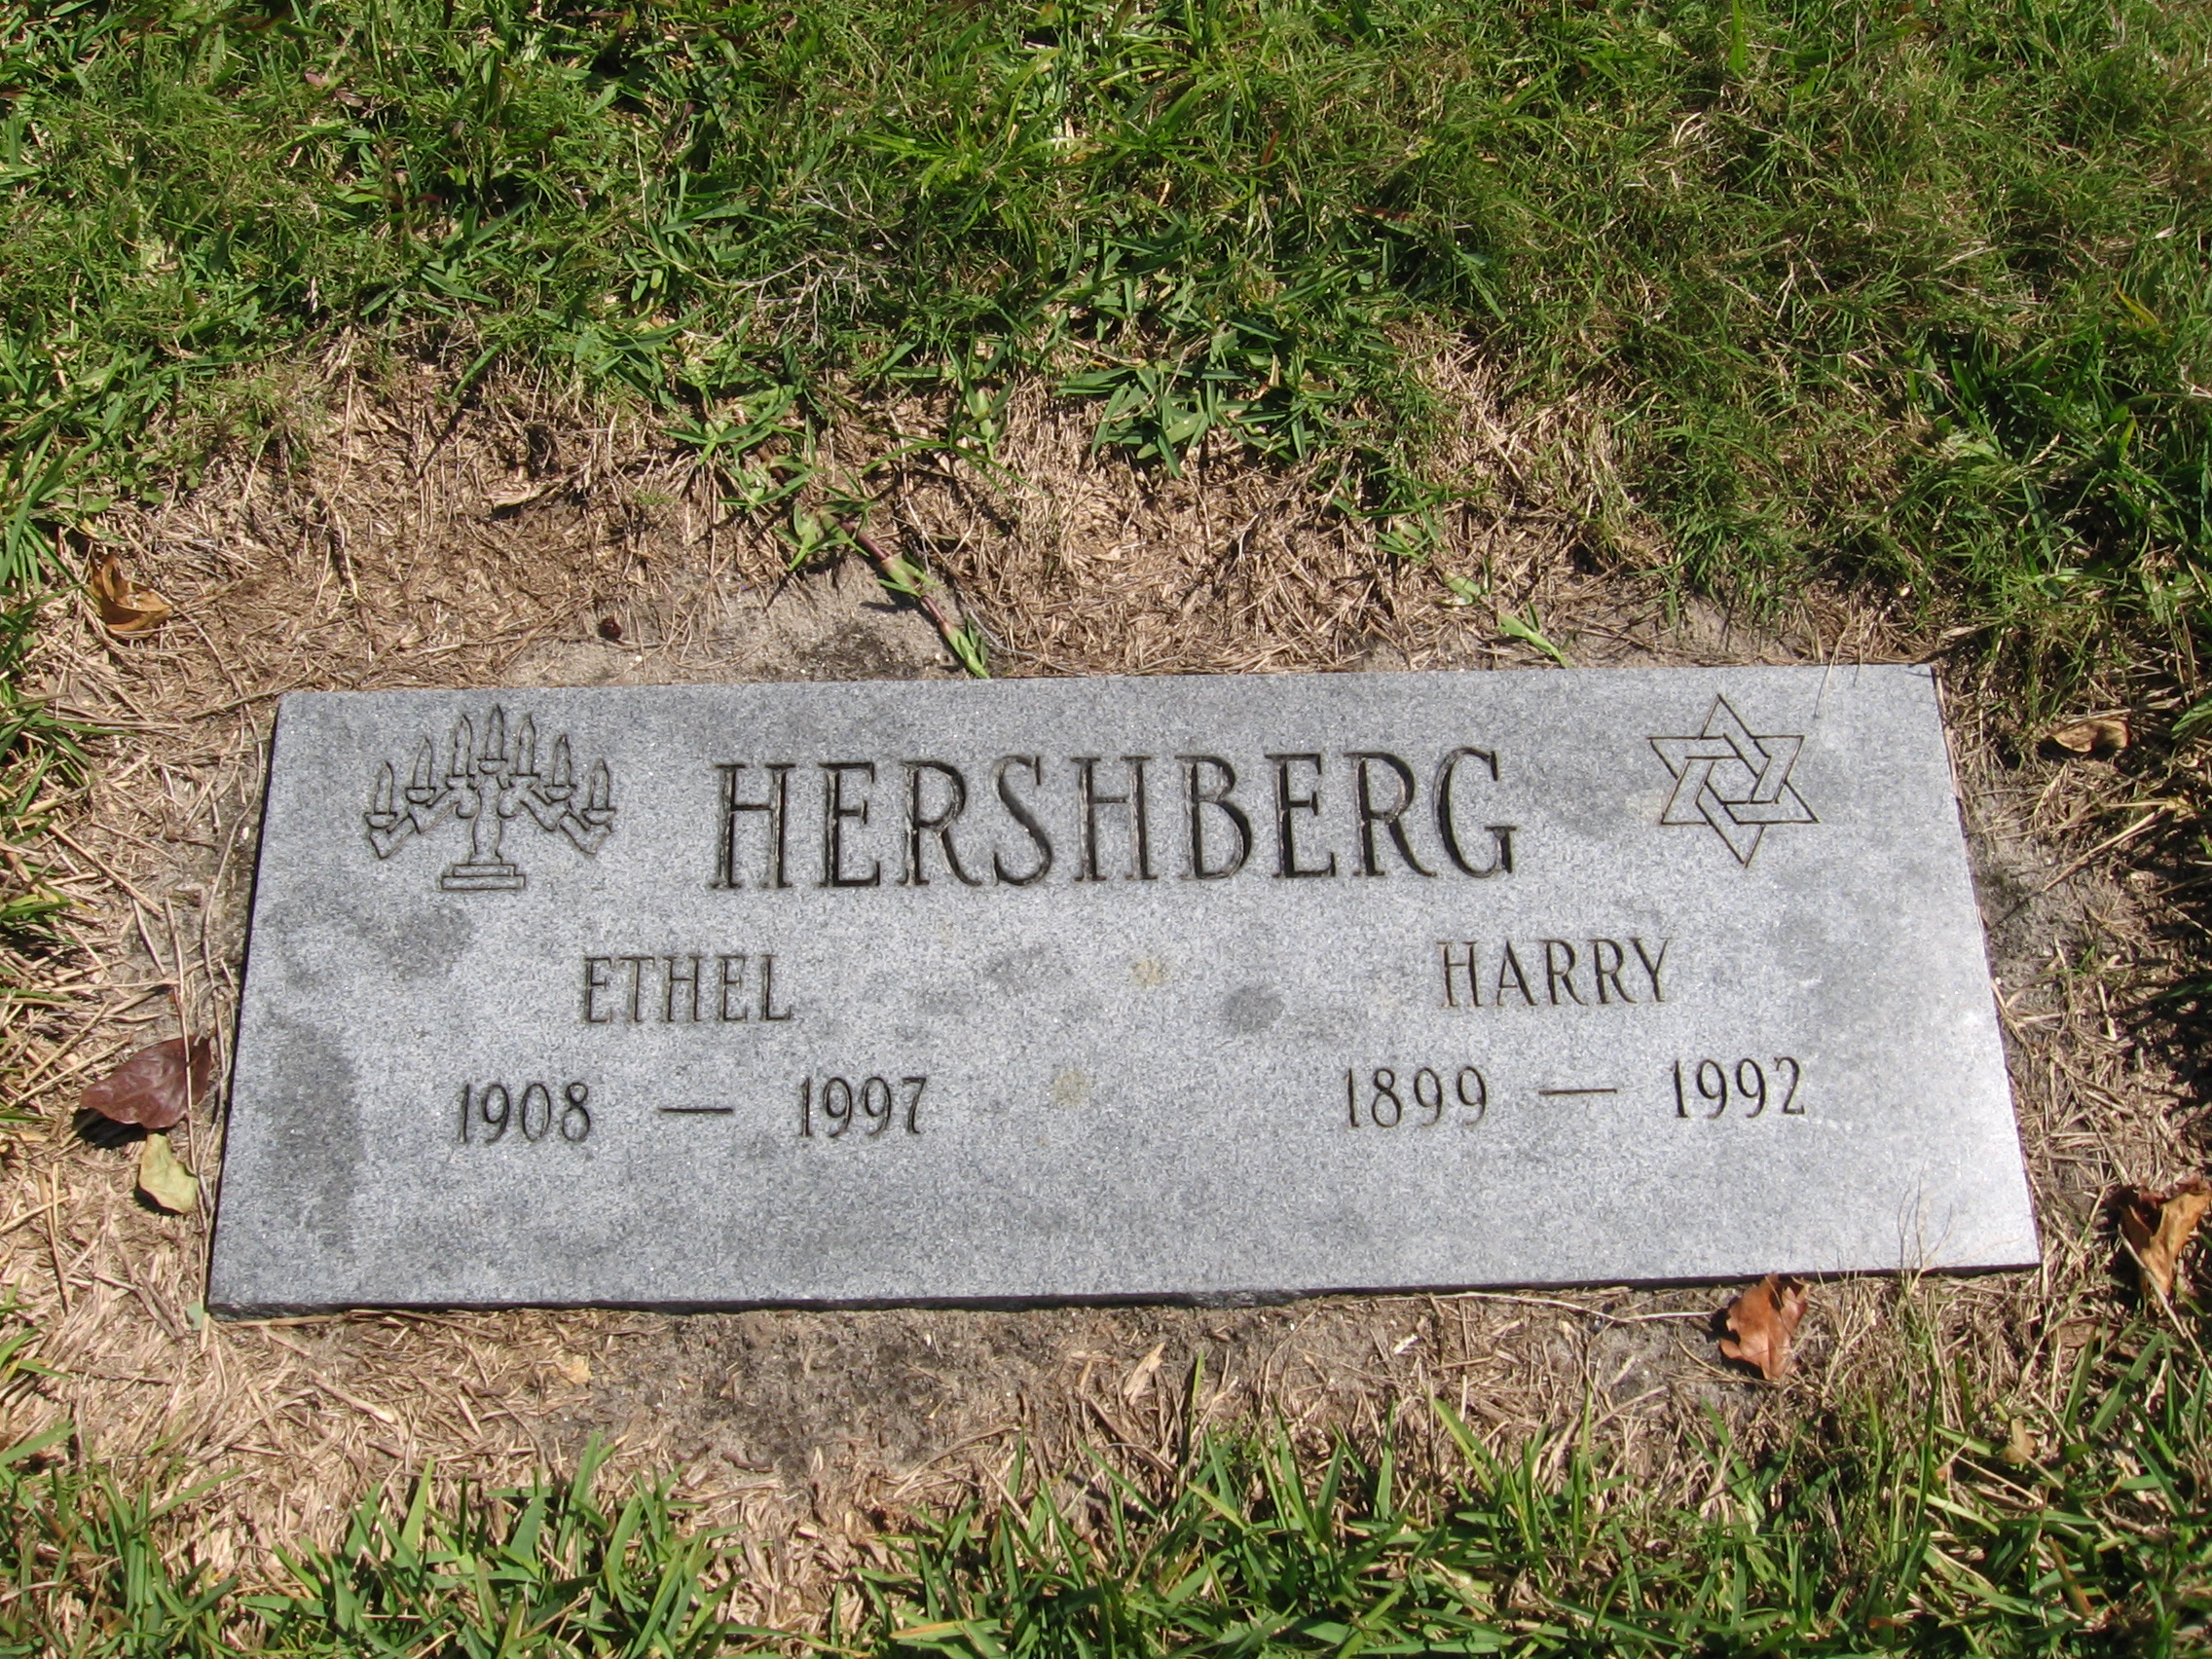 Ethel Hershberg